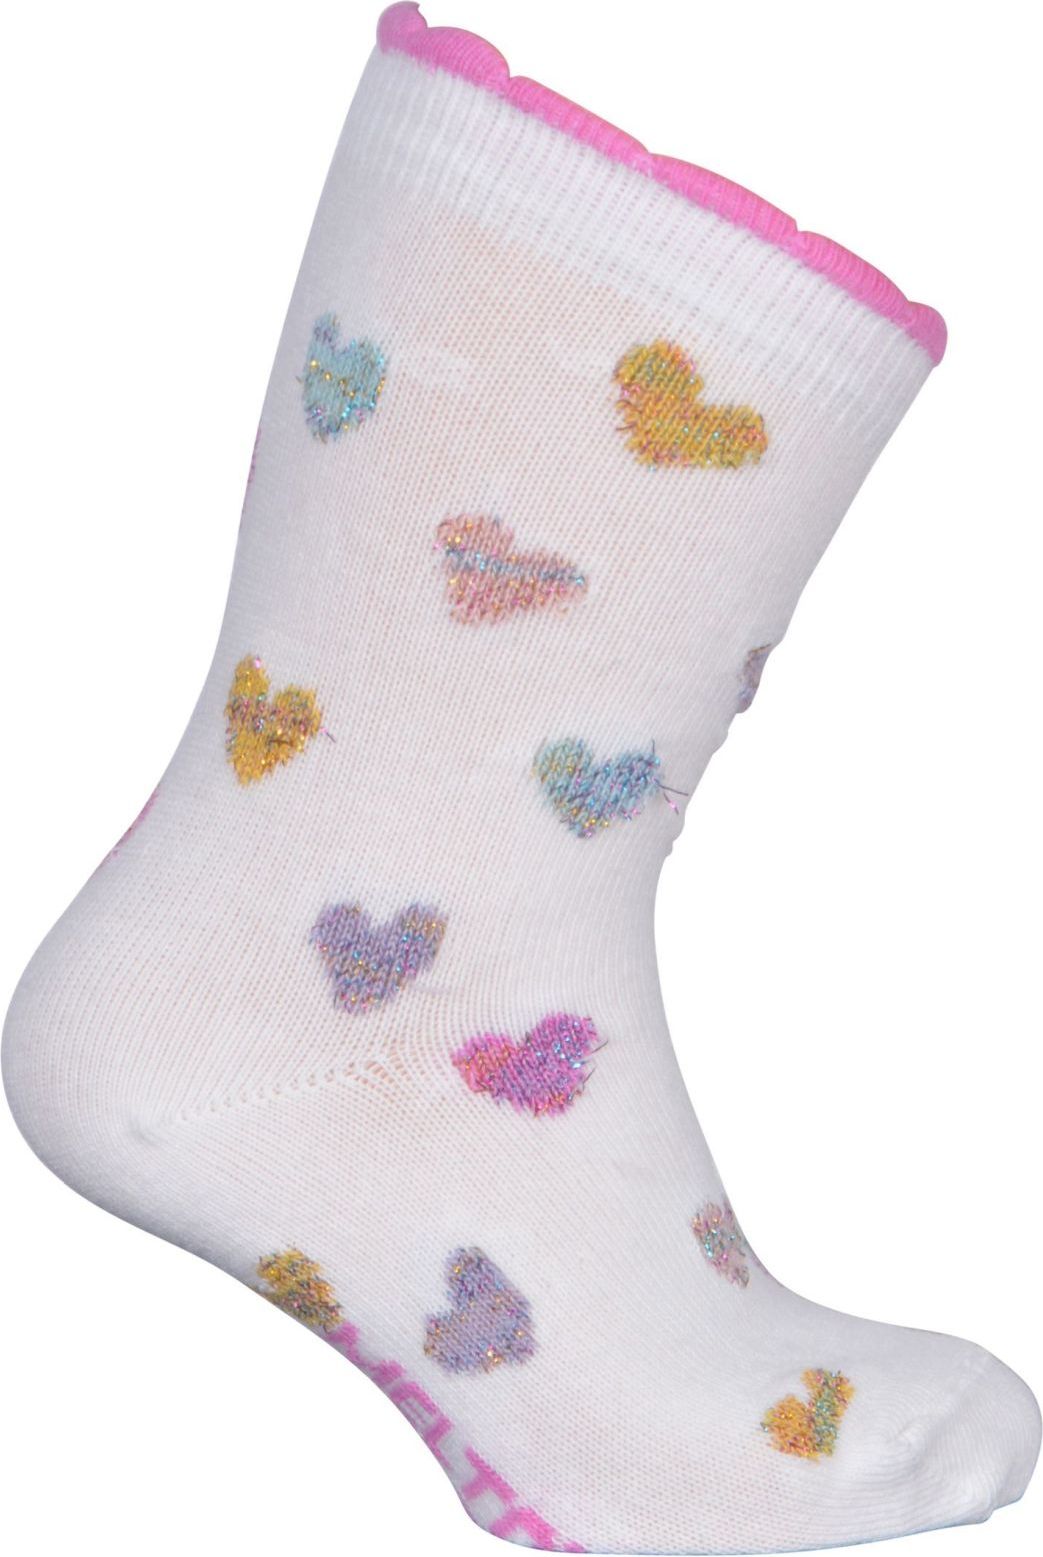 Melton Sock - Glitter Hearts w/Lurex - laté 31-34 - obrázek 1